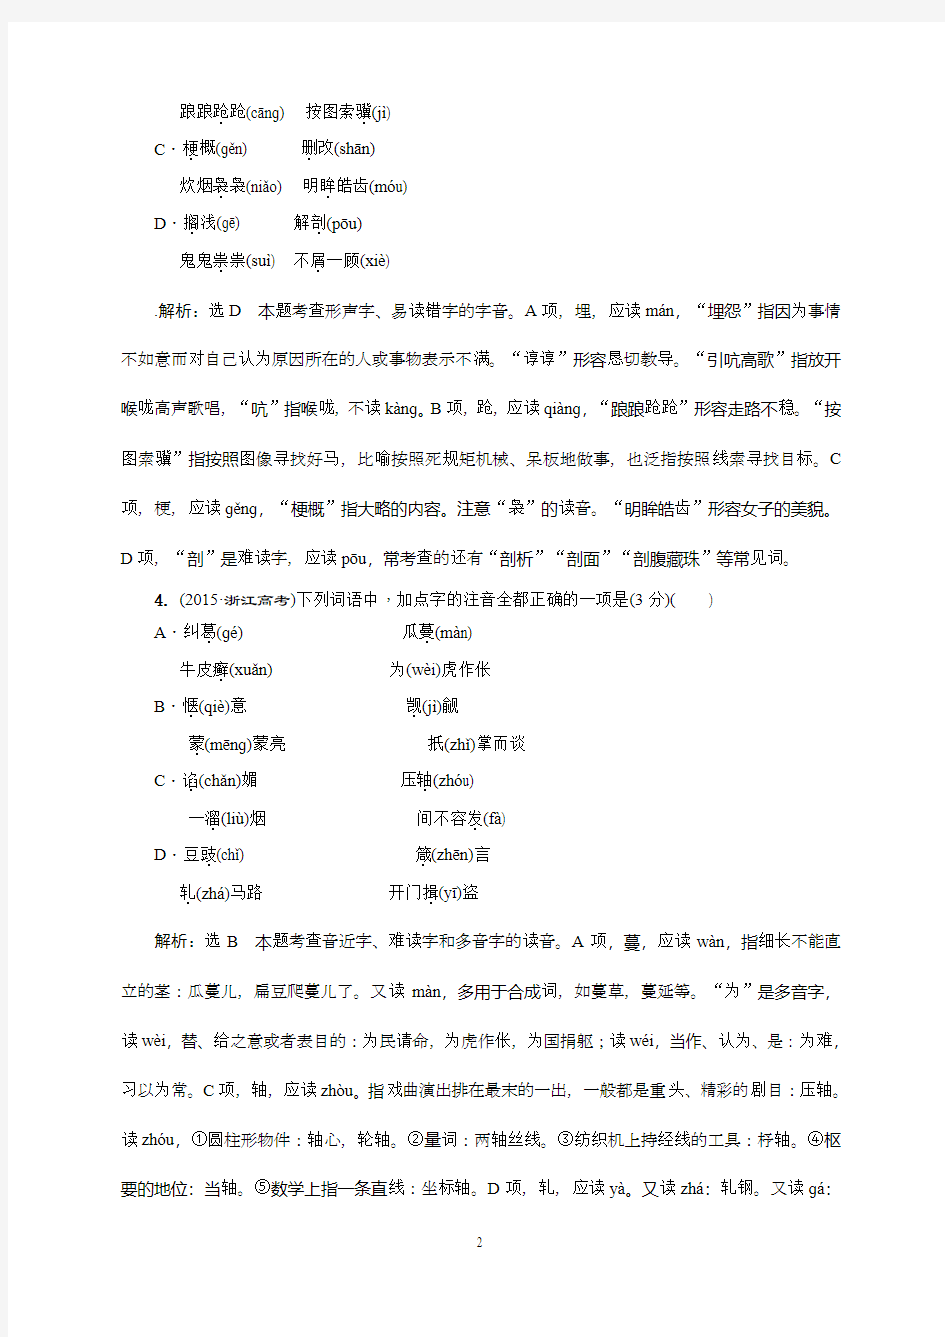 2011-2015年识记现代汉语普通话常用字的字音汇编